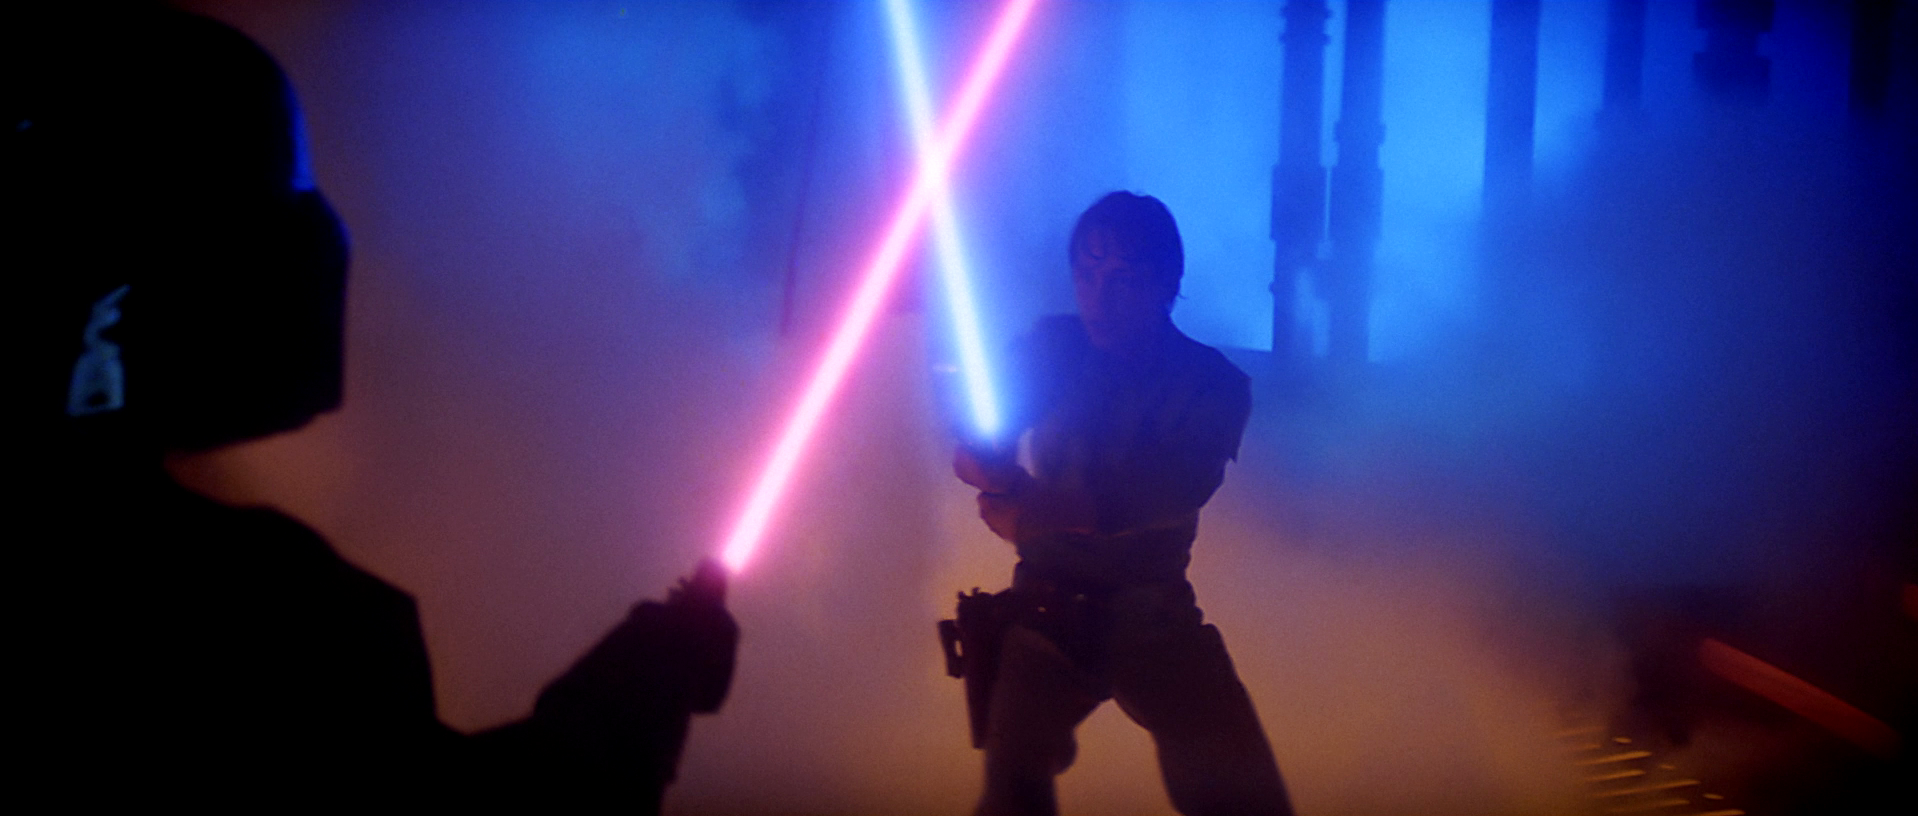 Luke vs Vader Lightsabers